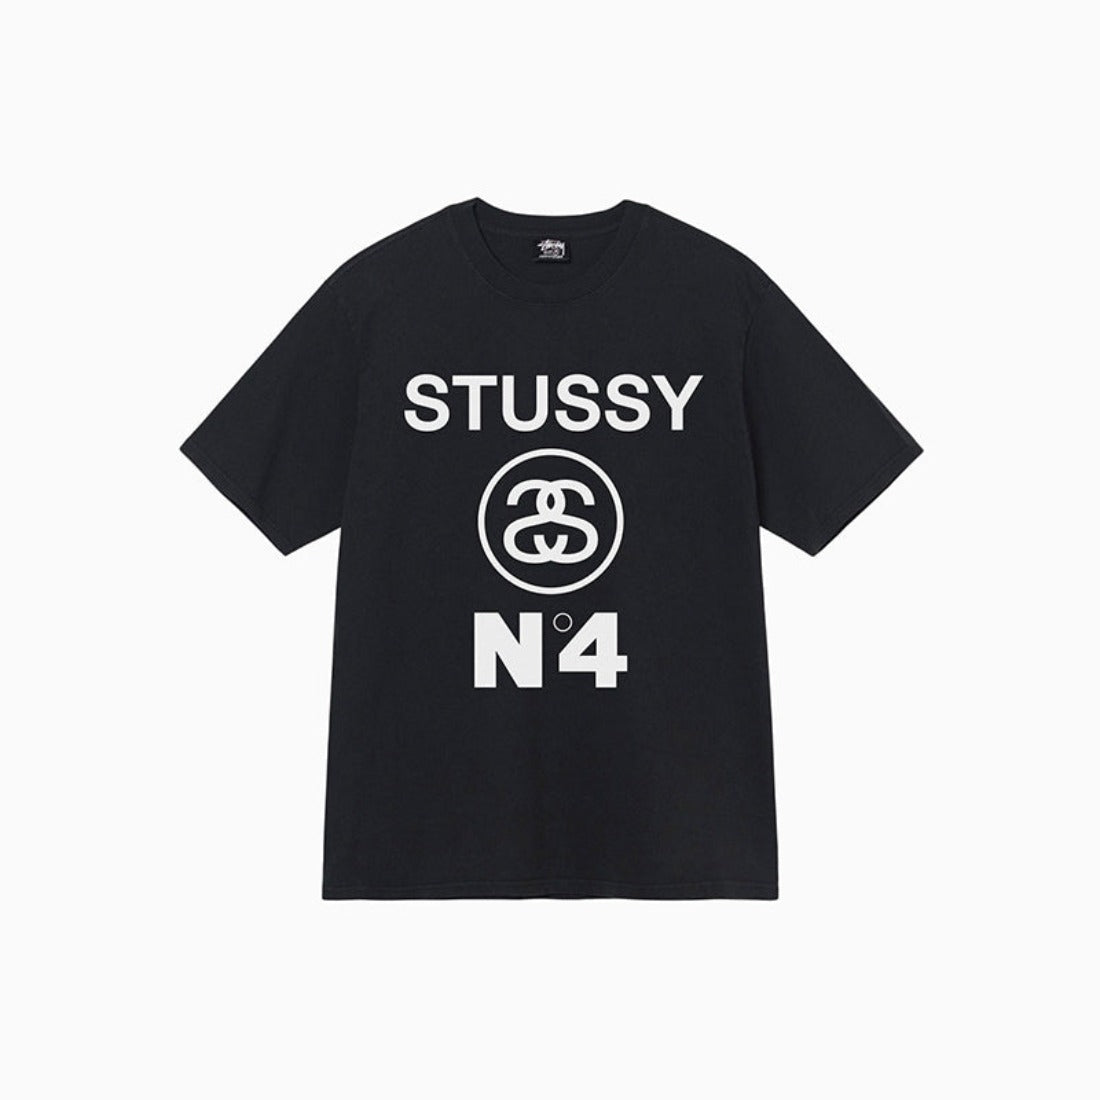 Stussy | No4 Pig Dyed Tee Black